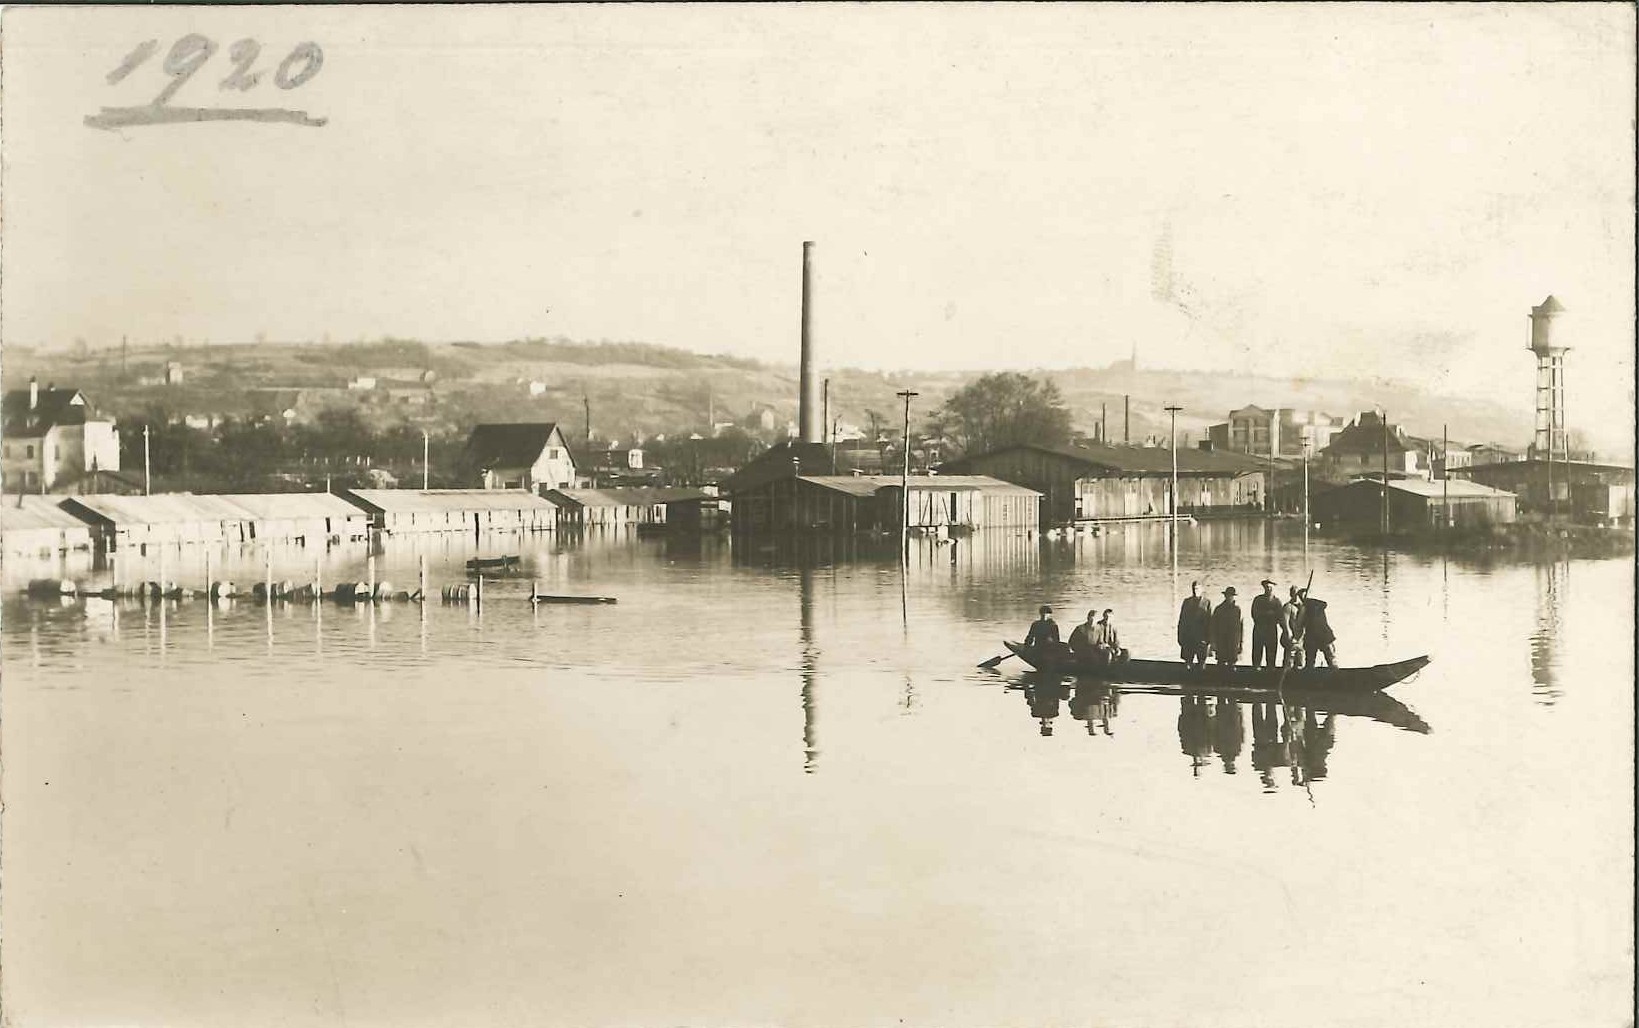 Hochwasser am Rheinhafen Bendorf, amerikanisches Militärdepot 1920 und Firma "Dr. C. Otto & Comp." (REM CC BY-NC-SA)